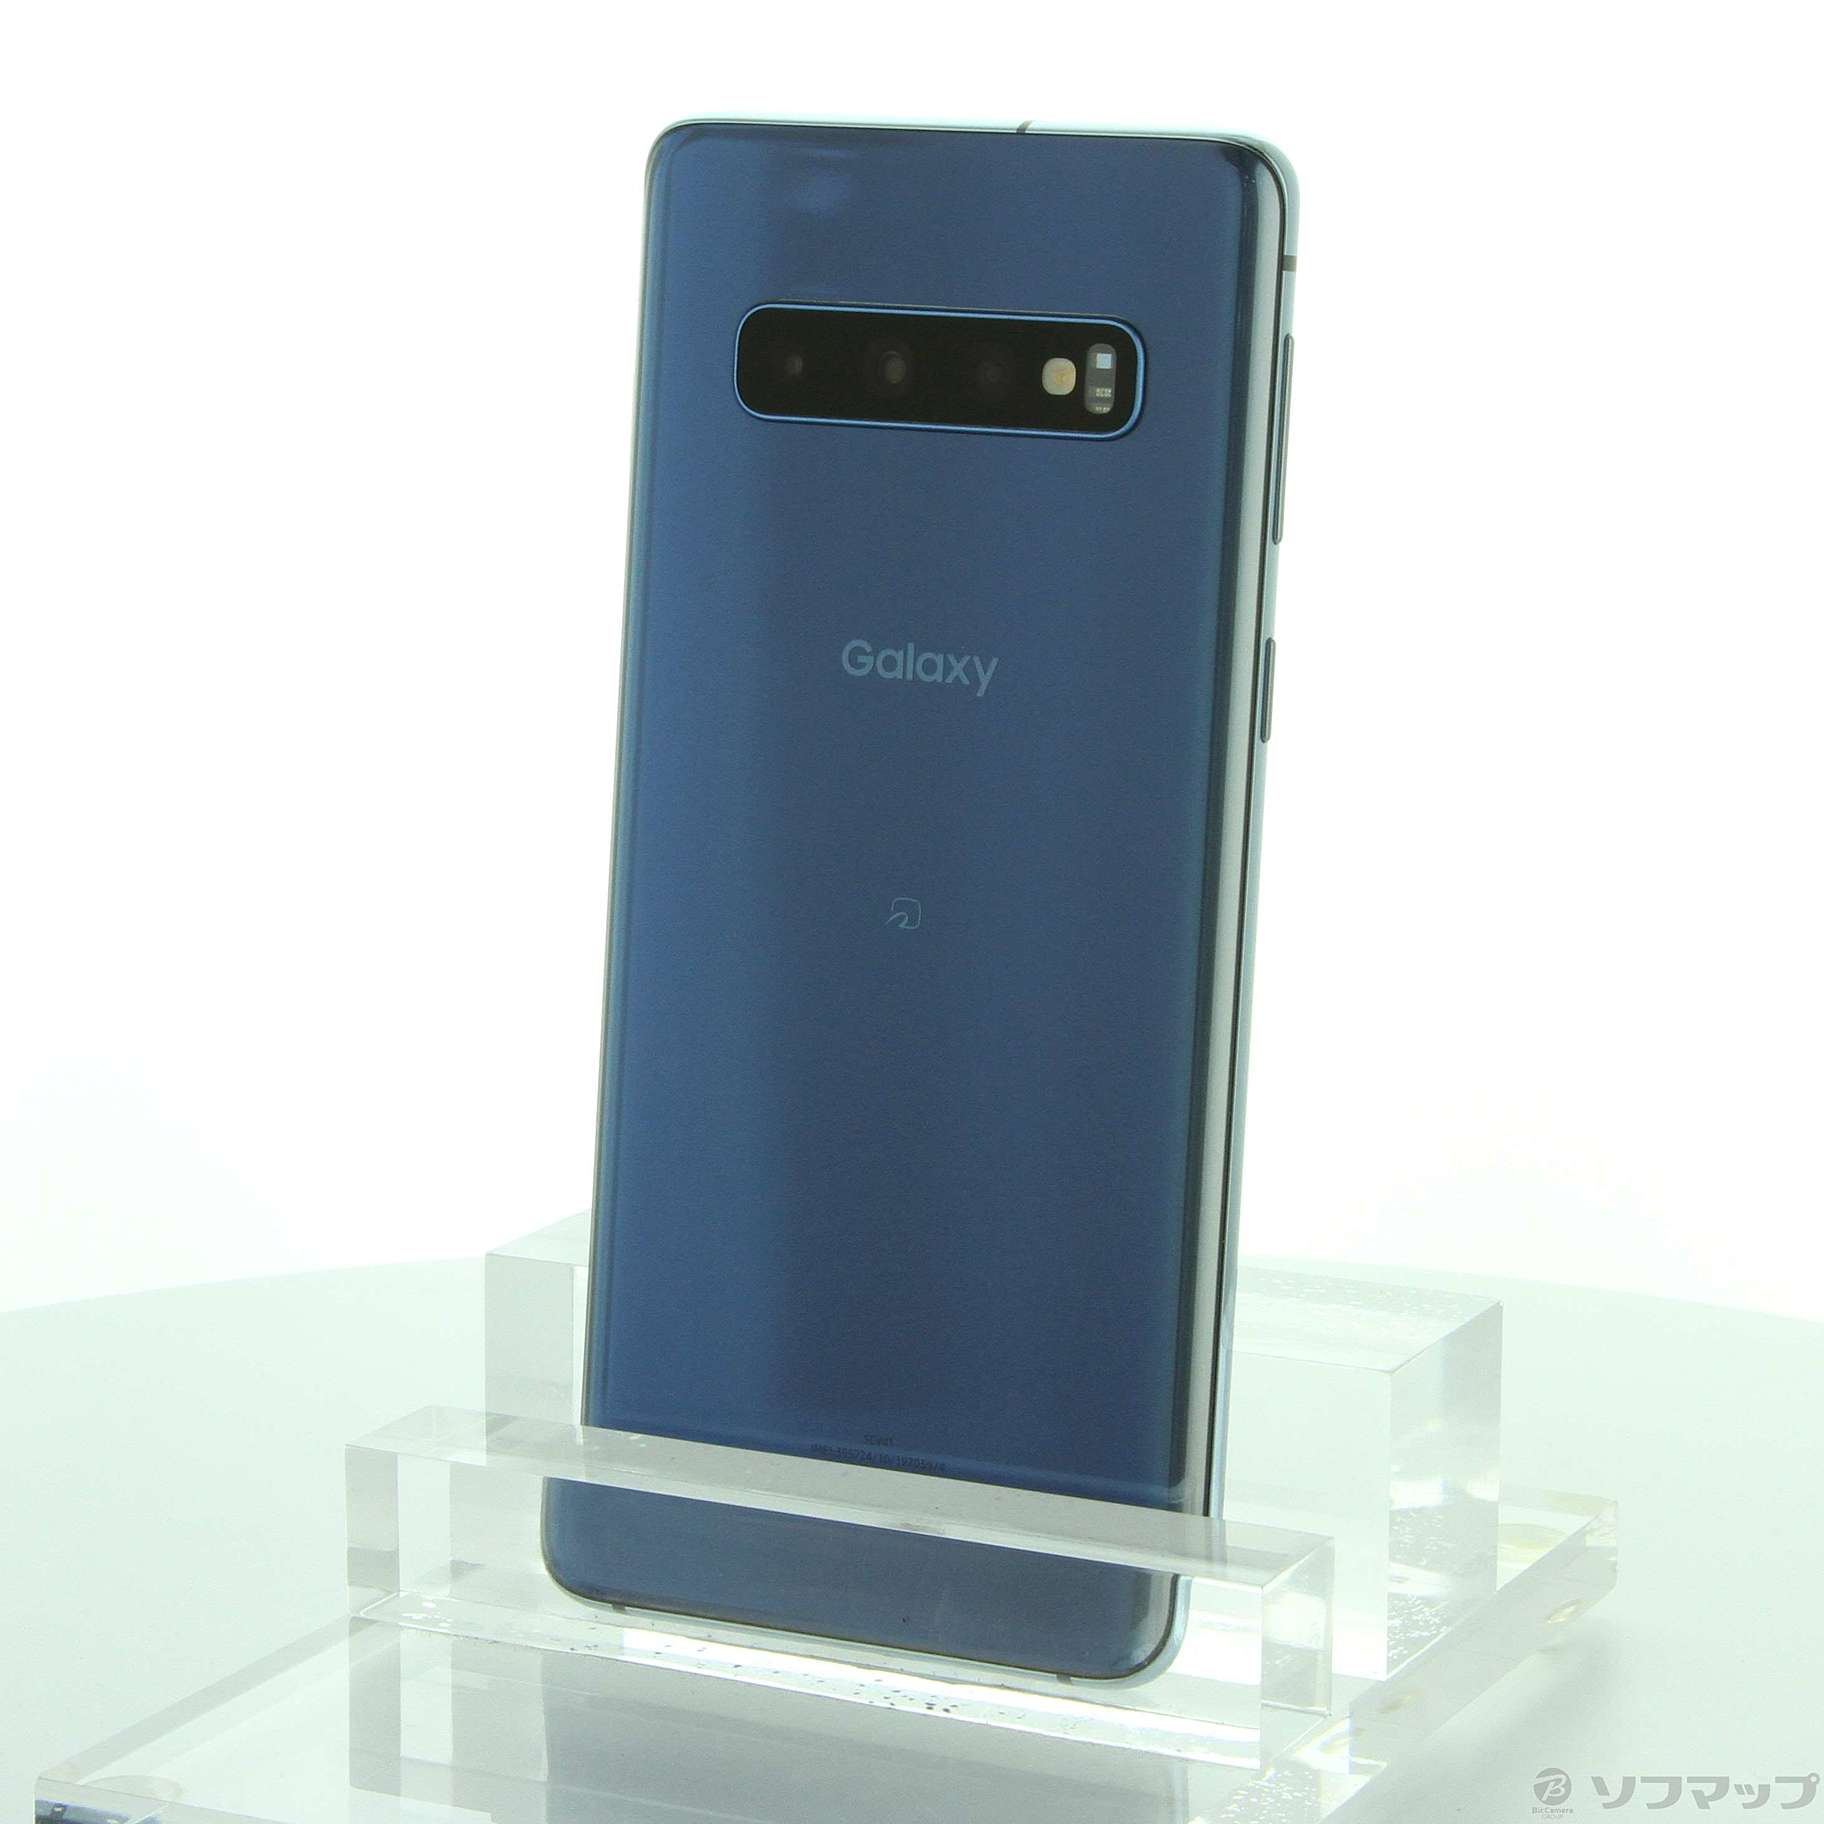 売り価格新品未使用セット☆Galaxy S10+ Prism White(G975U1) スマートフォン本体